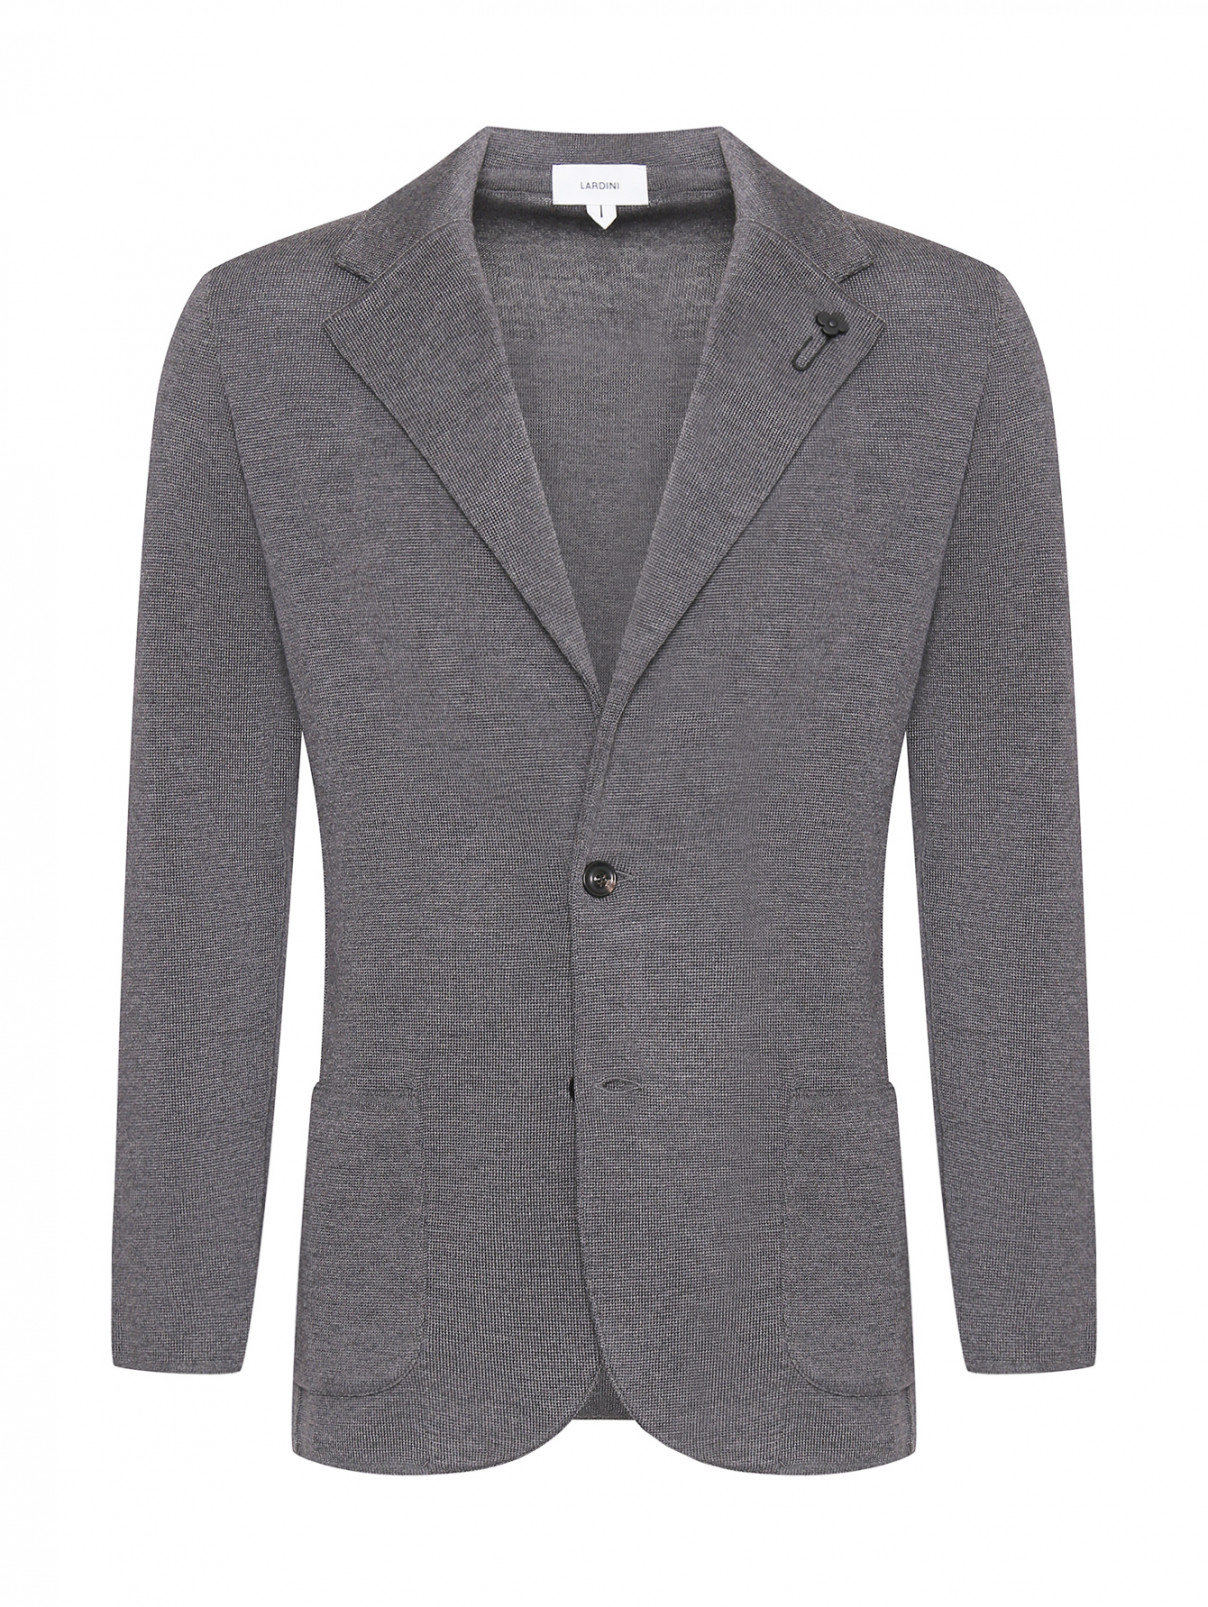 Однобортный трикотажный пиджак из шерсти LARDINI  –  Общий вид  – Цвет:  Серый